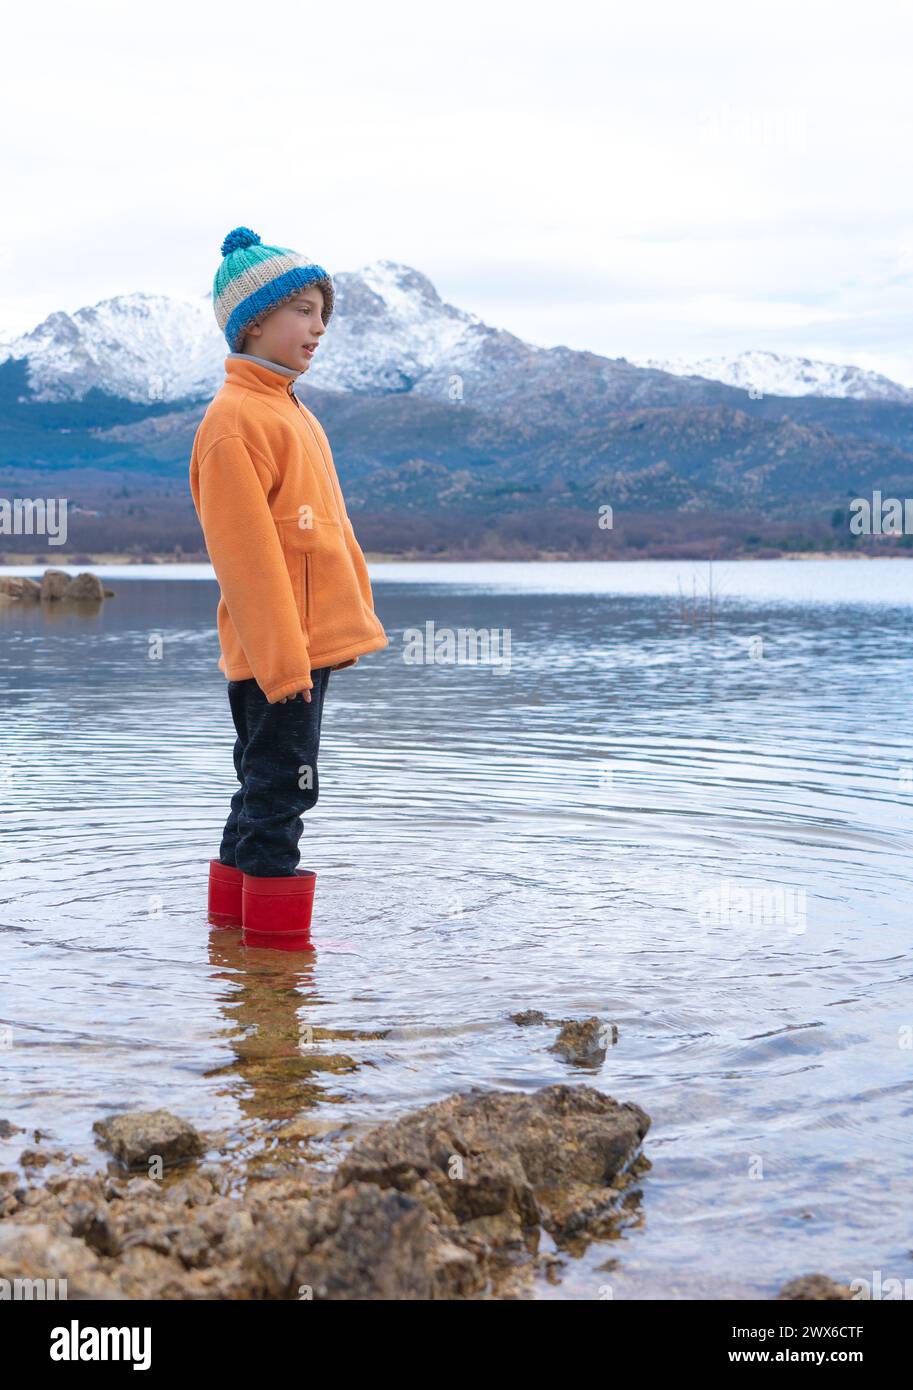 Garçon avec des bottes de pluie en hiver debout dans un lac avec des montagnes enneigées en arrière-plan Banque D'Images